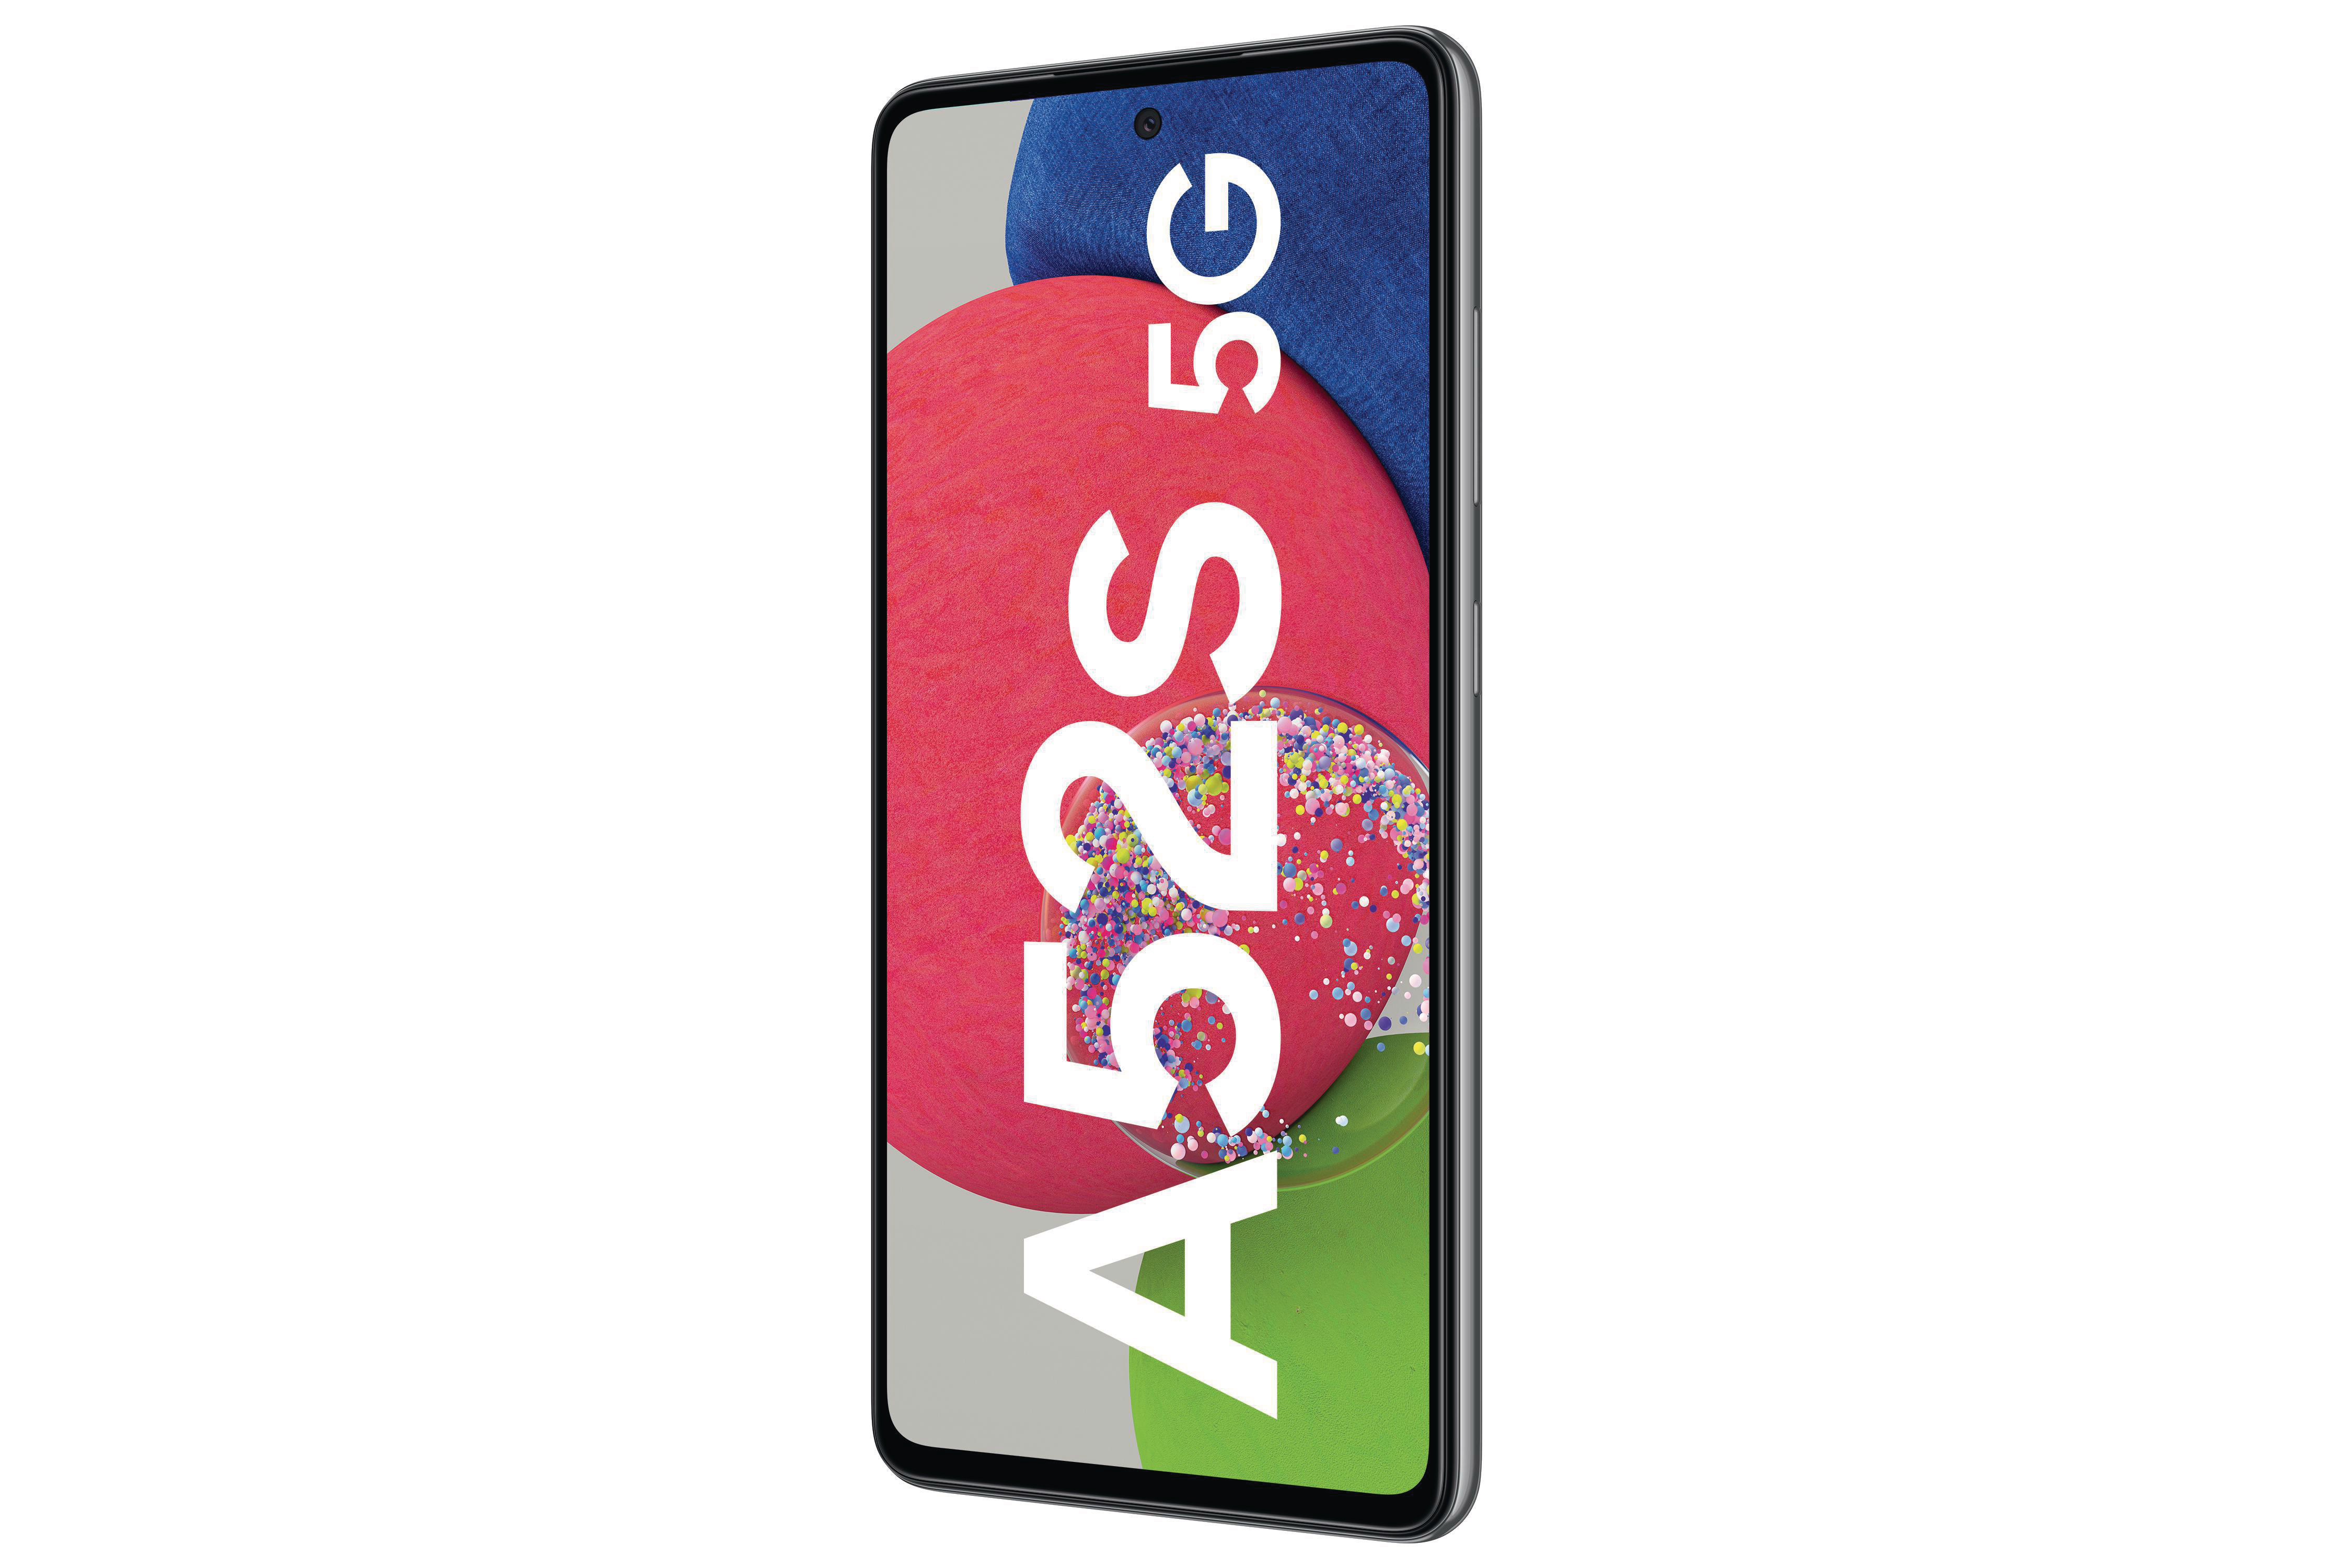 SIM 256 Awesome SAMSUNG Dual Galaxy A52s Black GB 5G